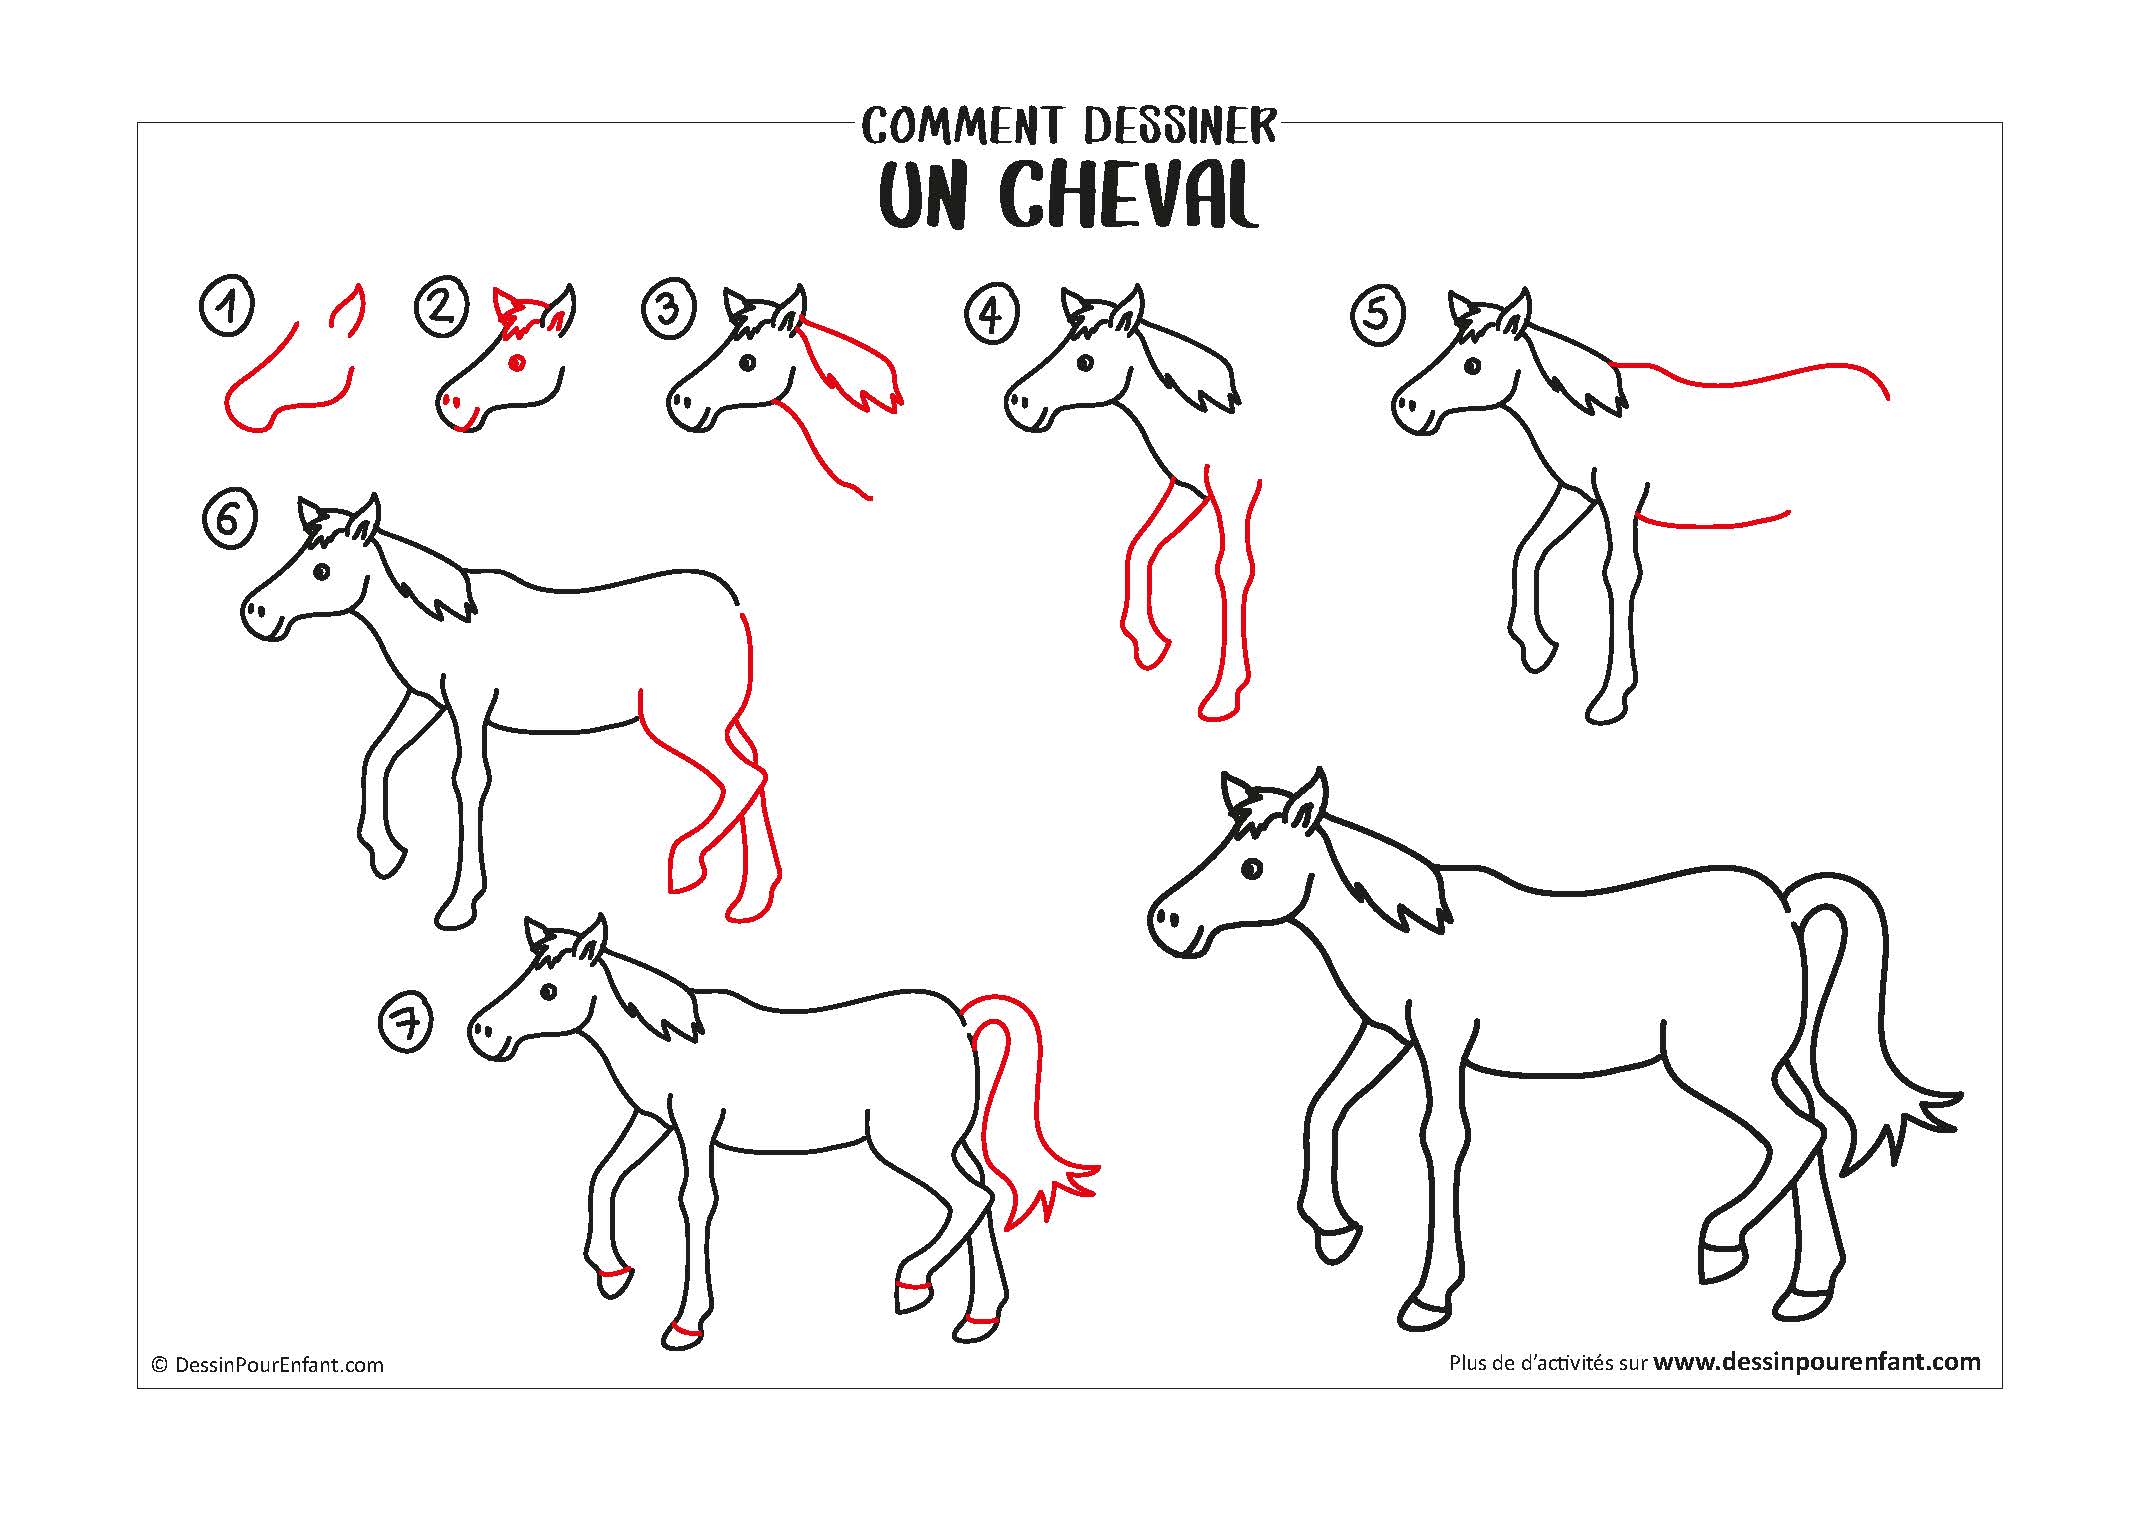 Comment dessiner un cheval en 7 étapes - Dessin pour enfant